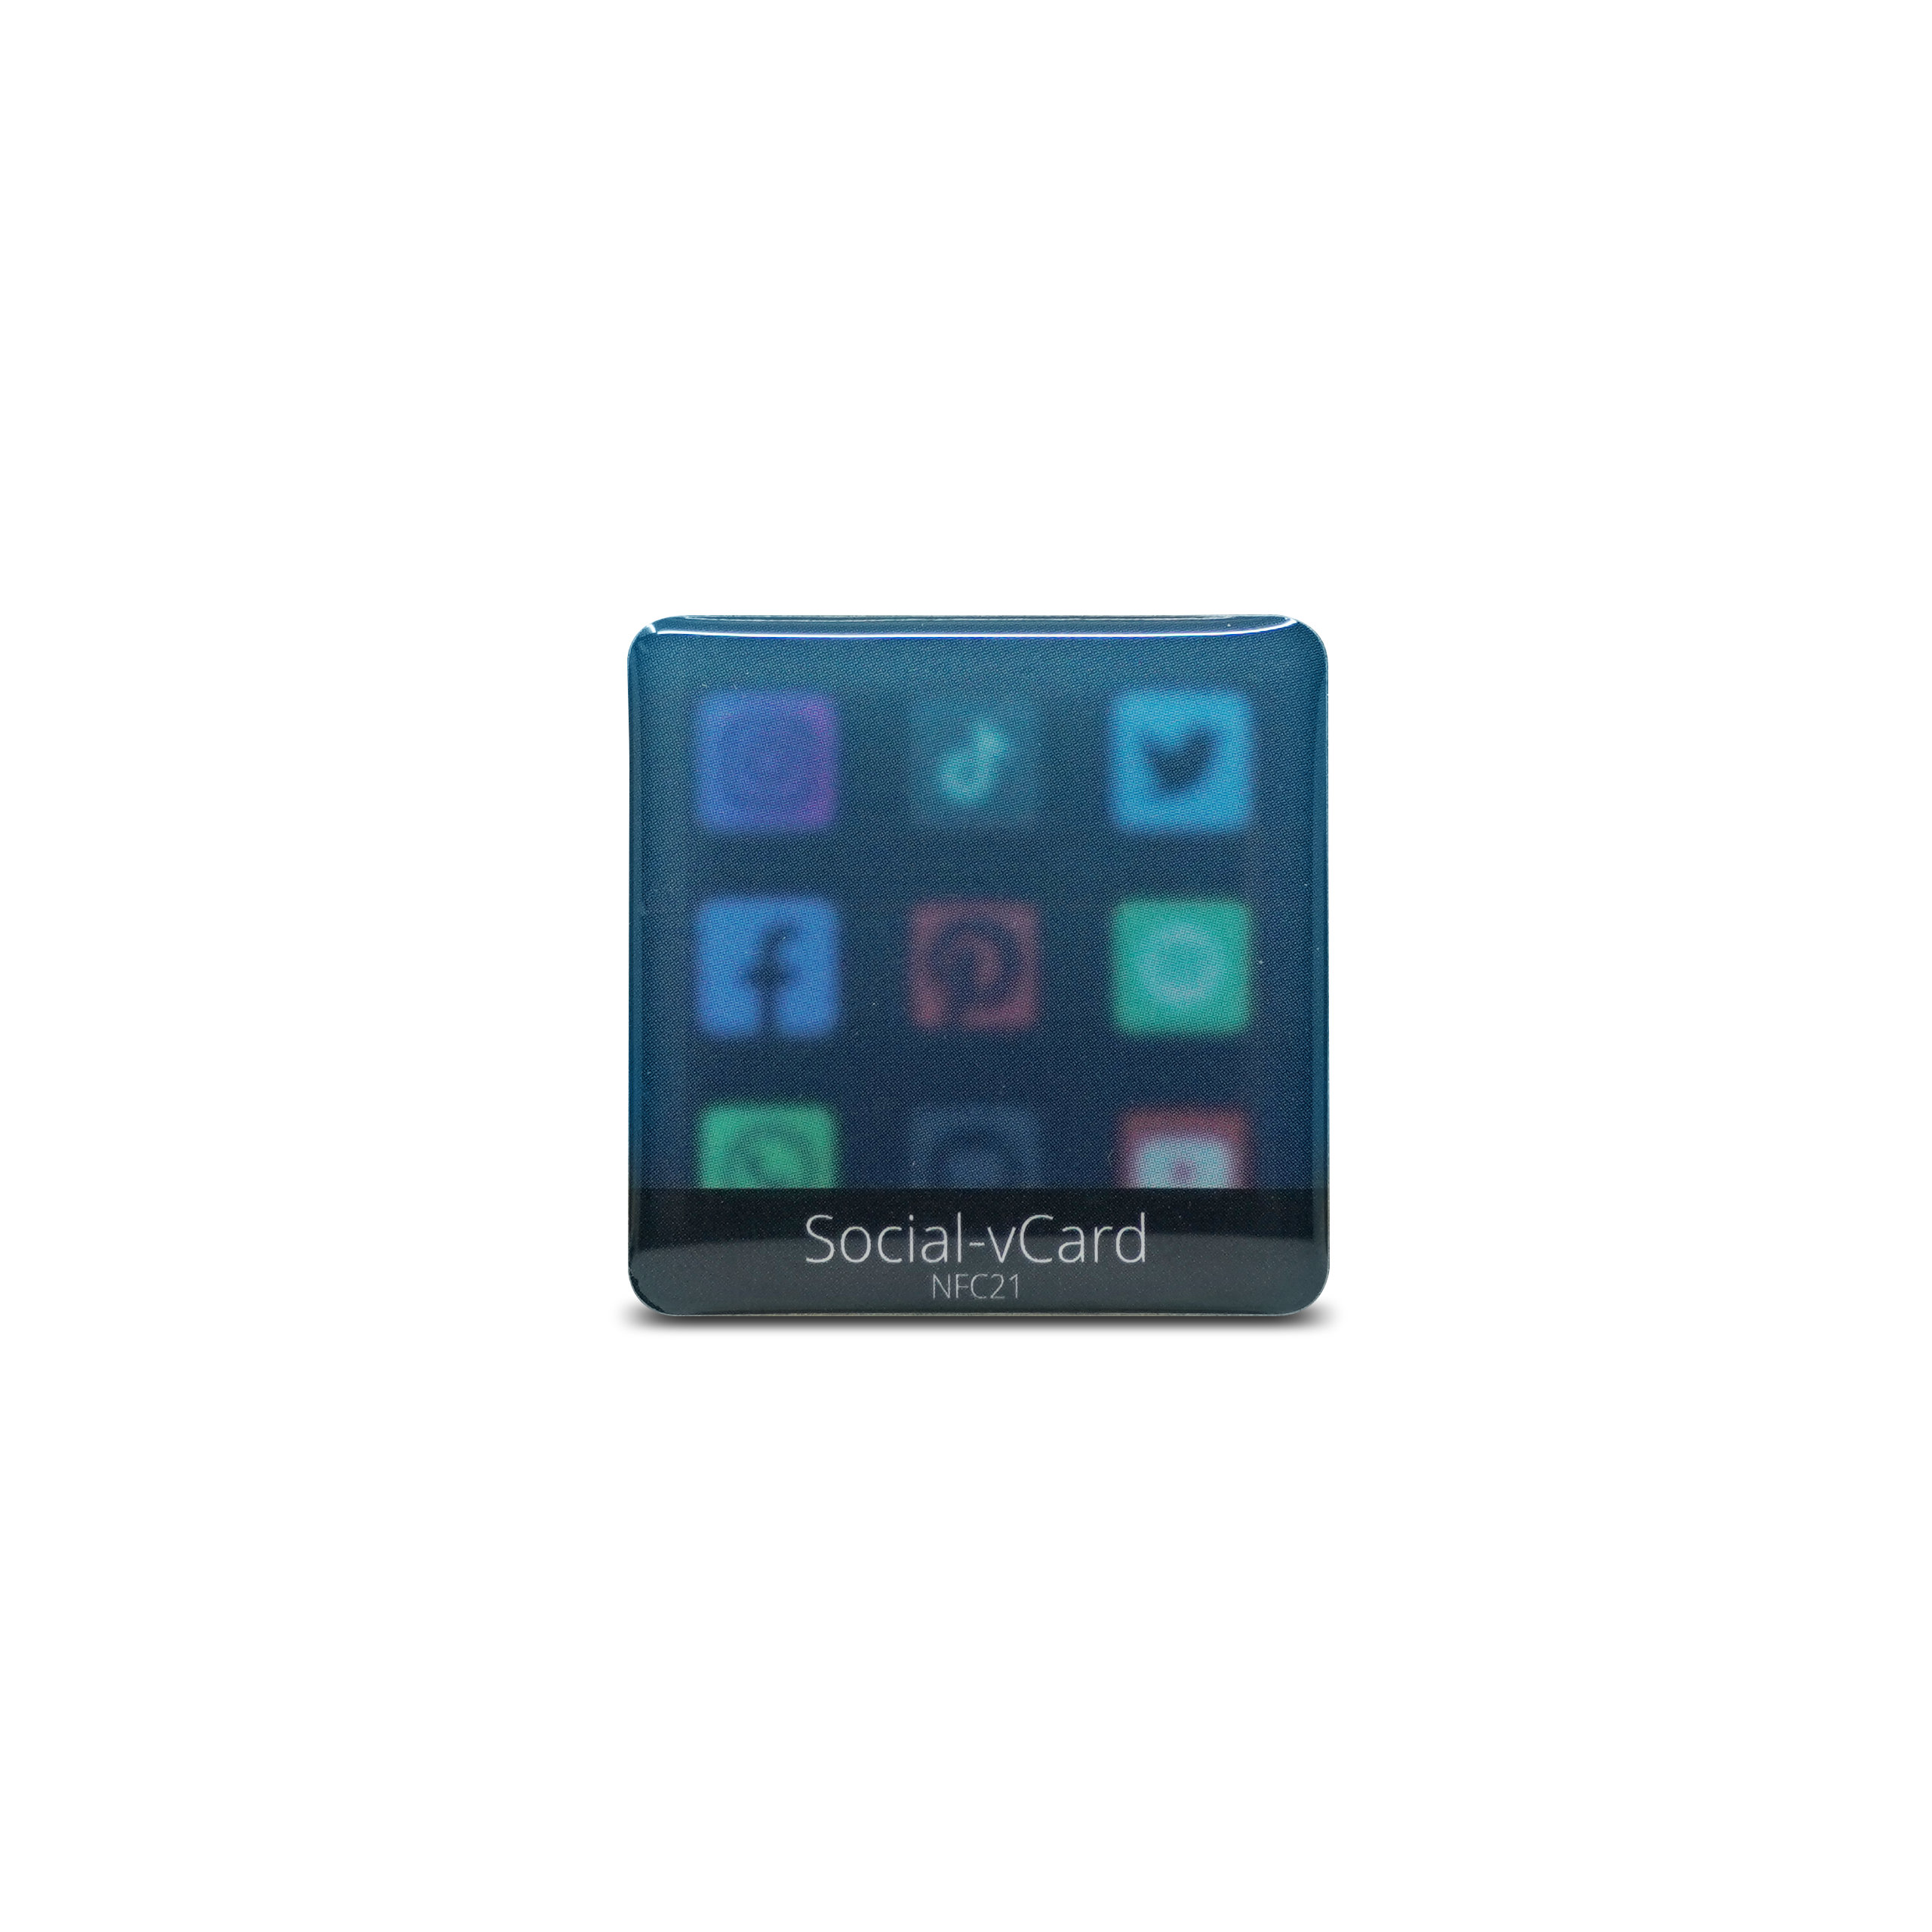 Social-vCard Dark - Digital social media sticker - PET - 35 x 35 mm - black